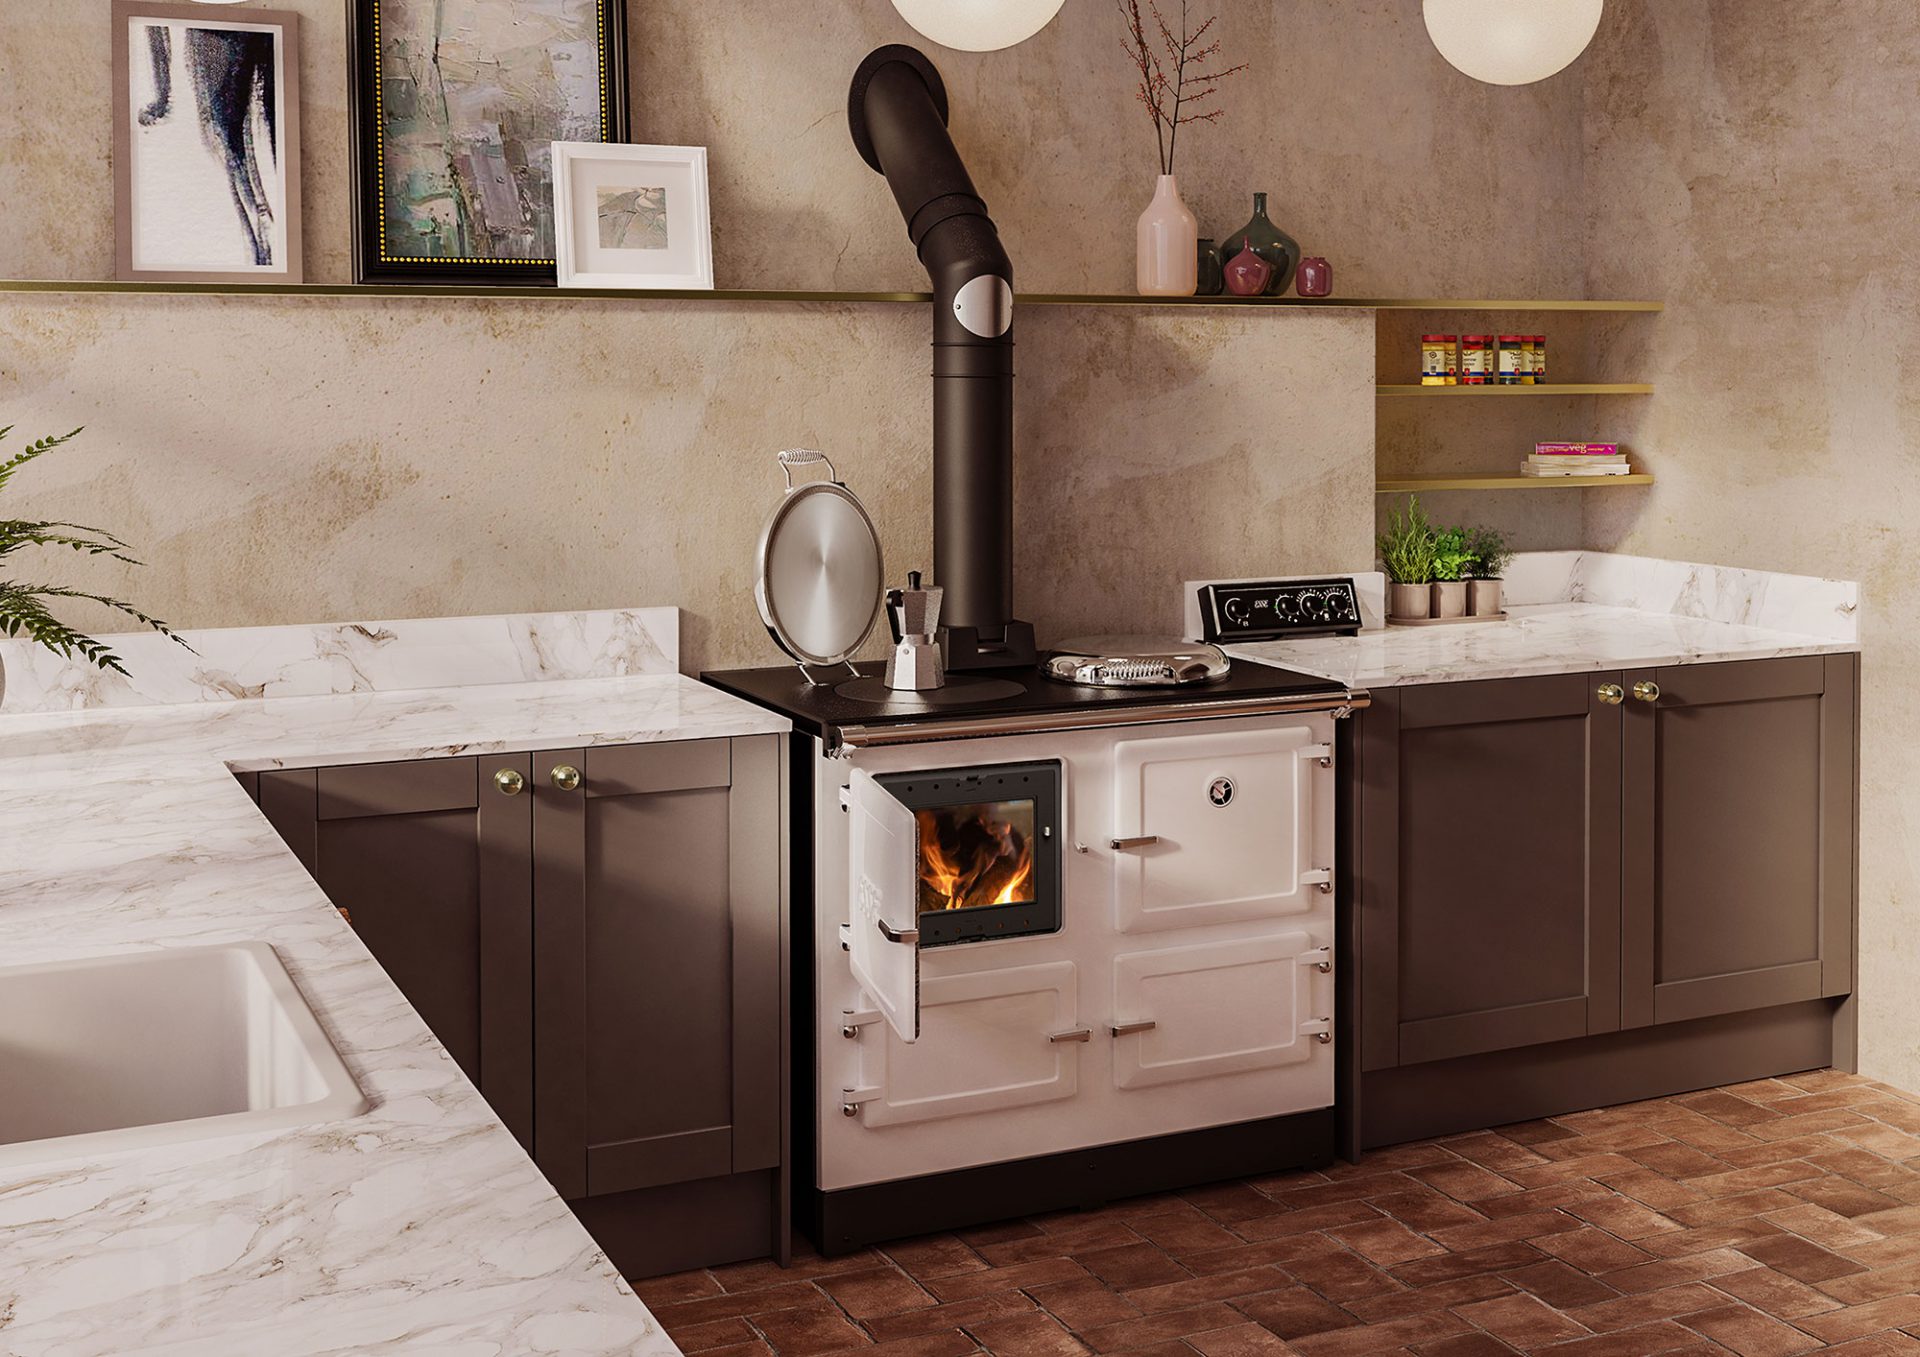 https://www.esse.com/wp-content/uploads/2019/10/esse-990-hybrid-white-kitchen.jpg